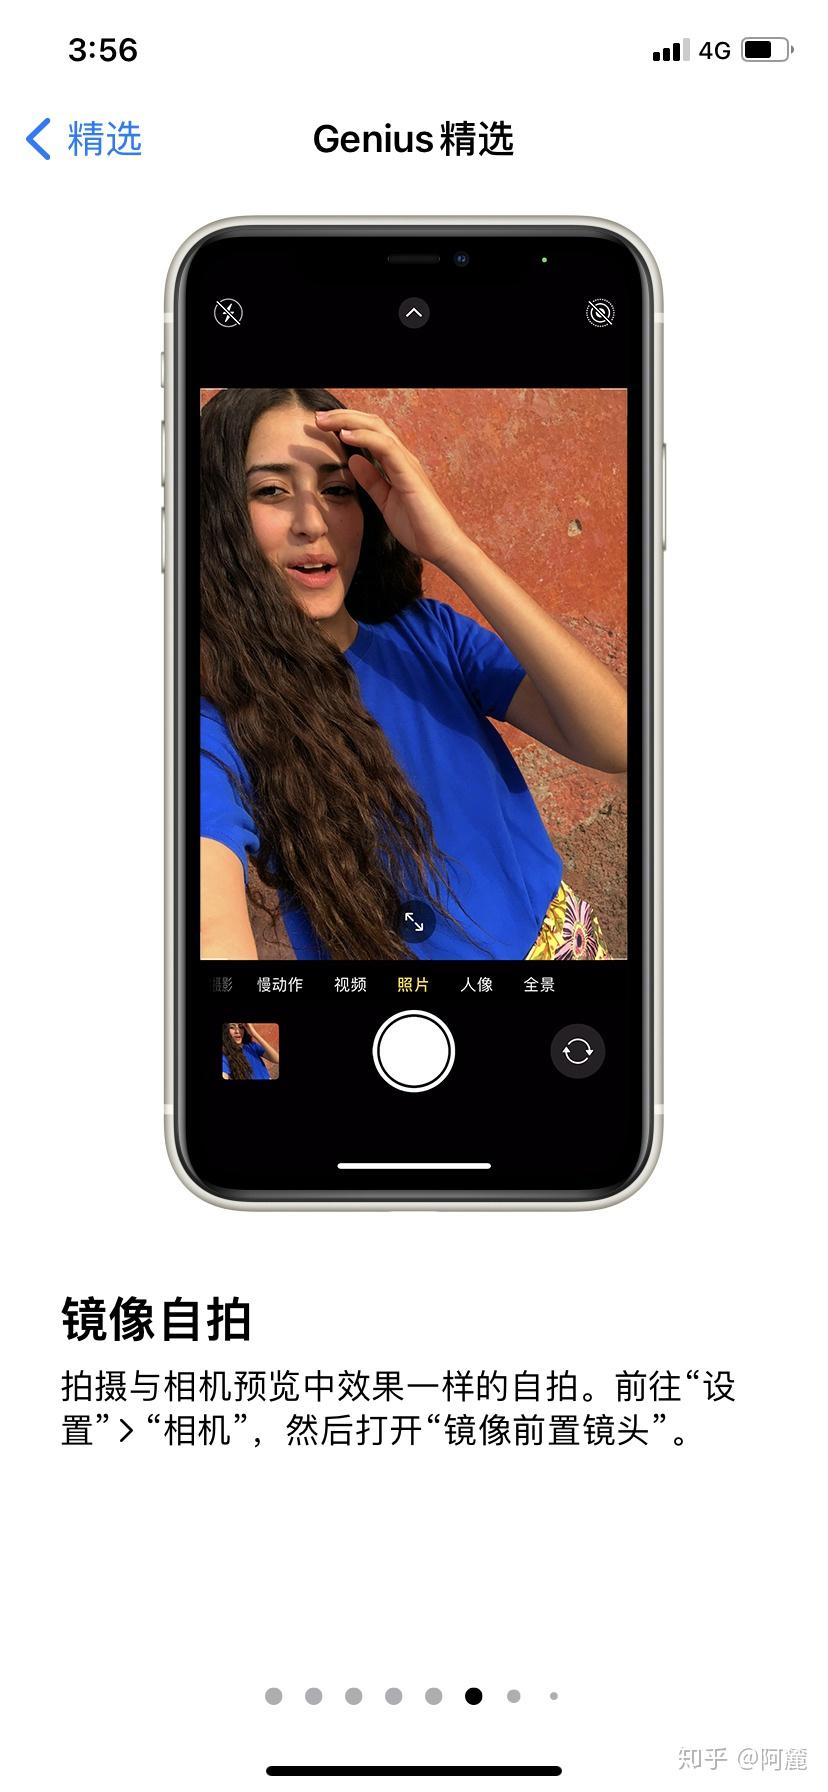 iphone7照片镜像翻转图片